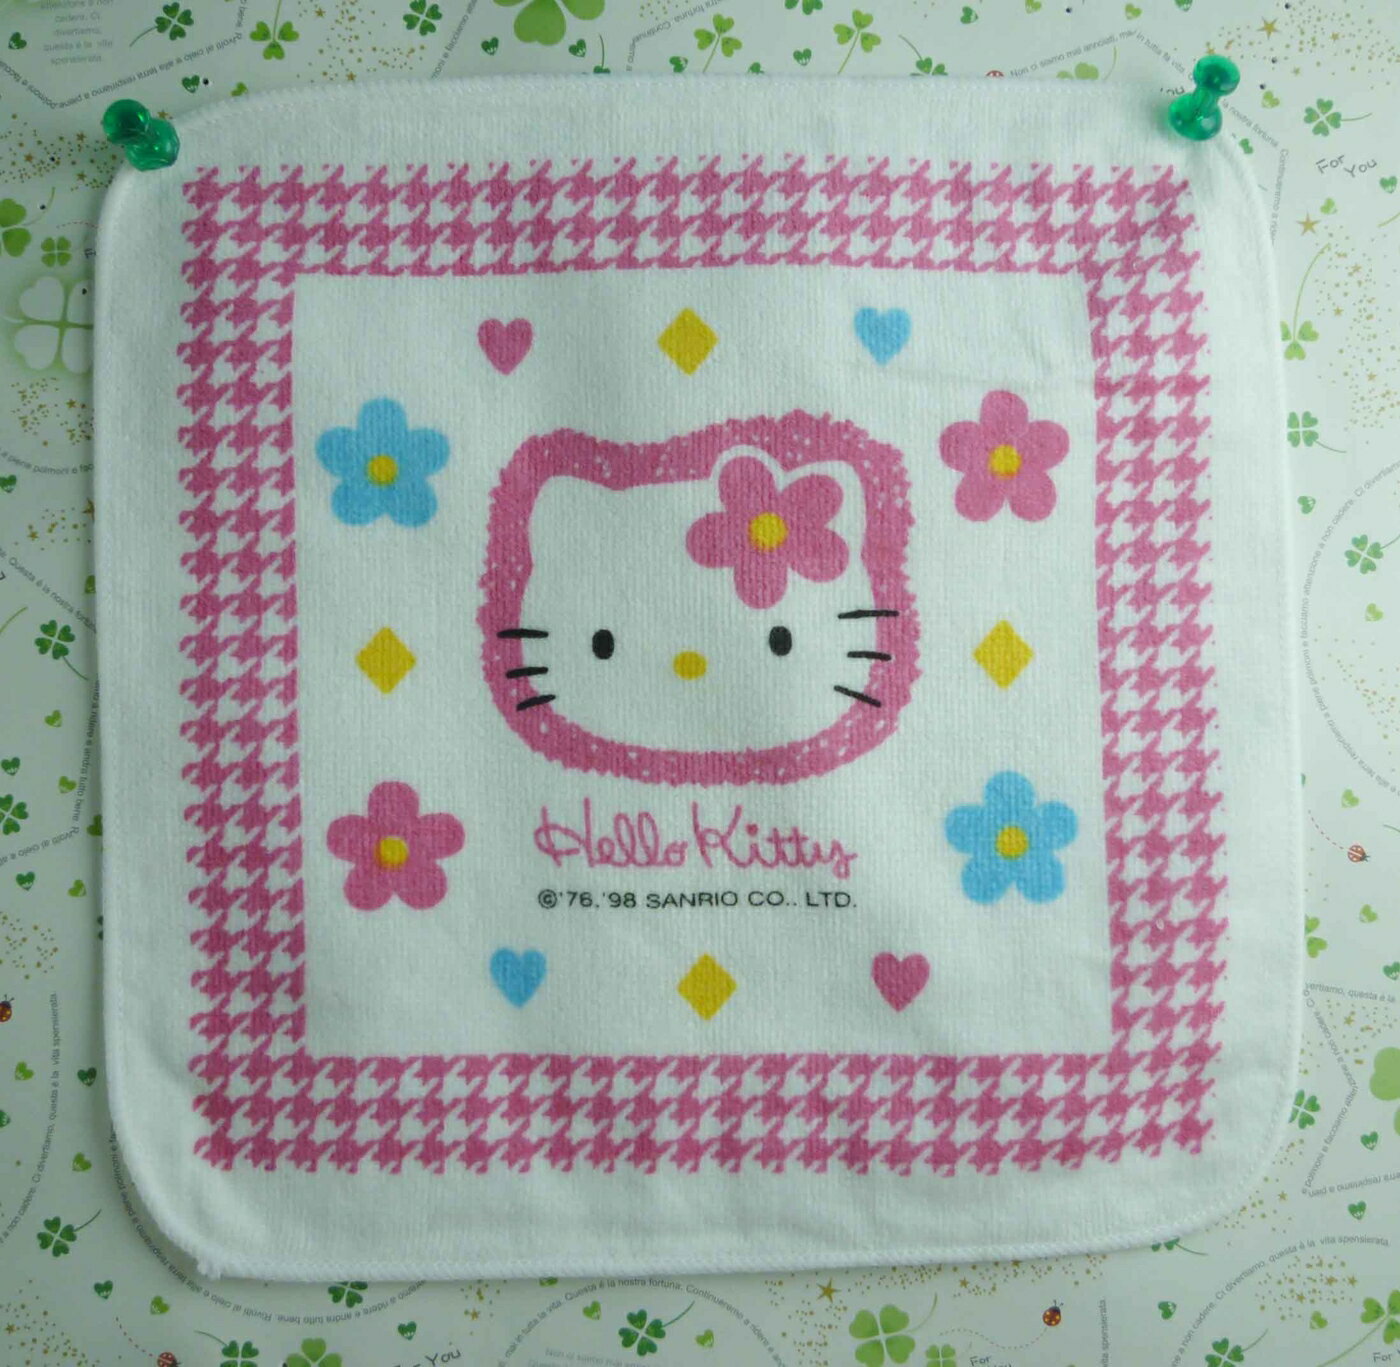 【震撼精品百貨】Hello Kitty 凱蒂貓 方巾-限量款-粉藍花朵頭 震撼日式精品百貨